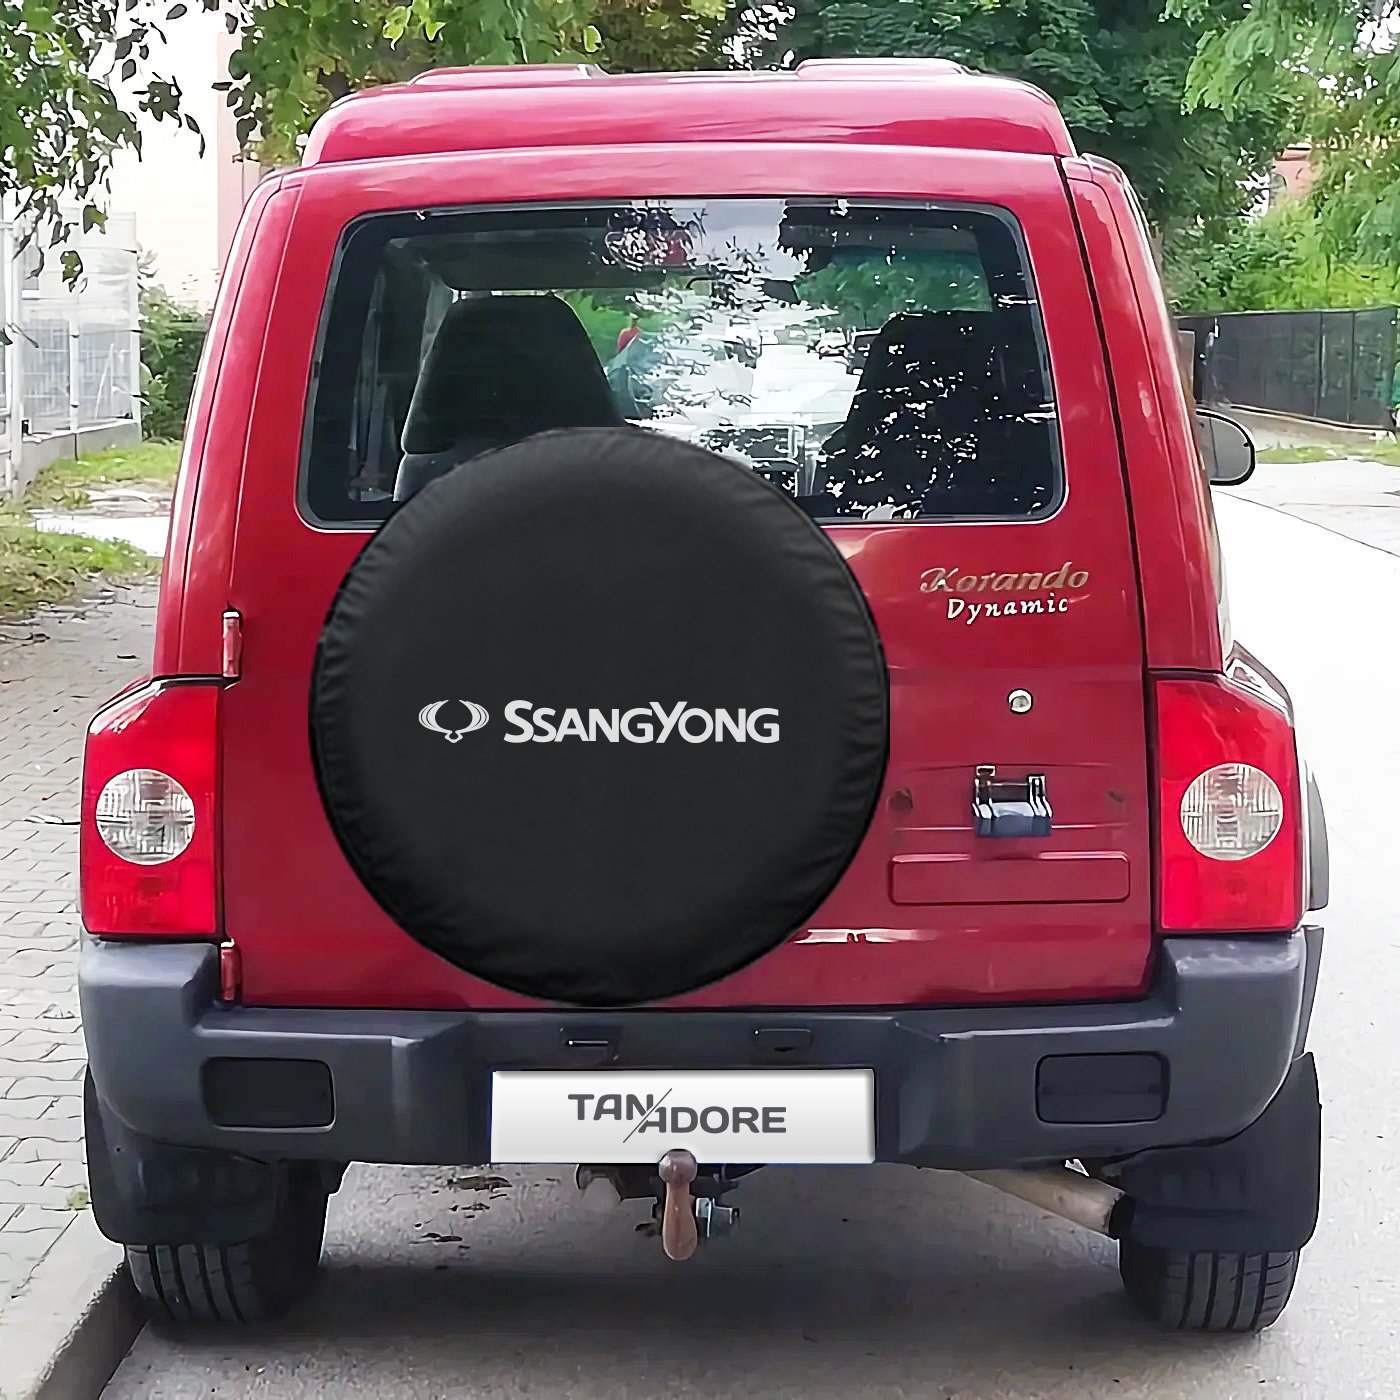 SsangYong Logo Spare Wheel Tire Cover